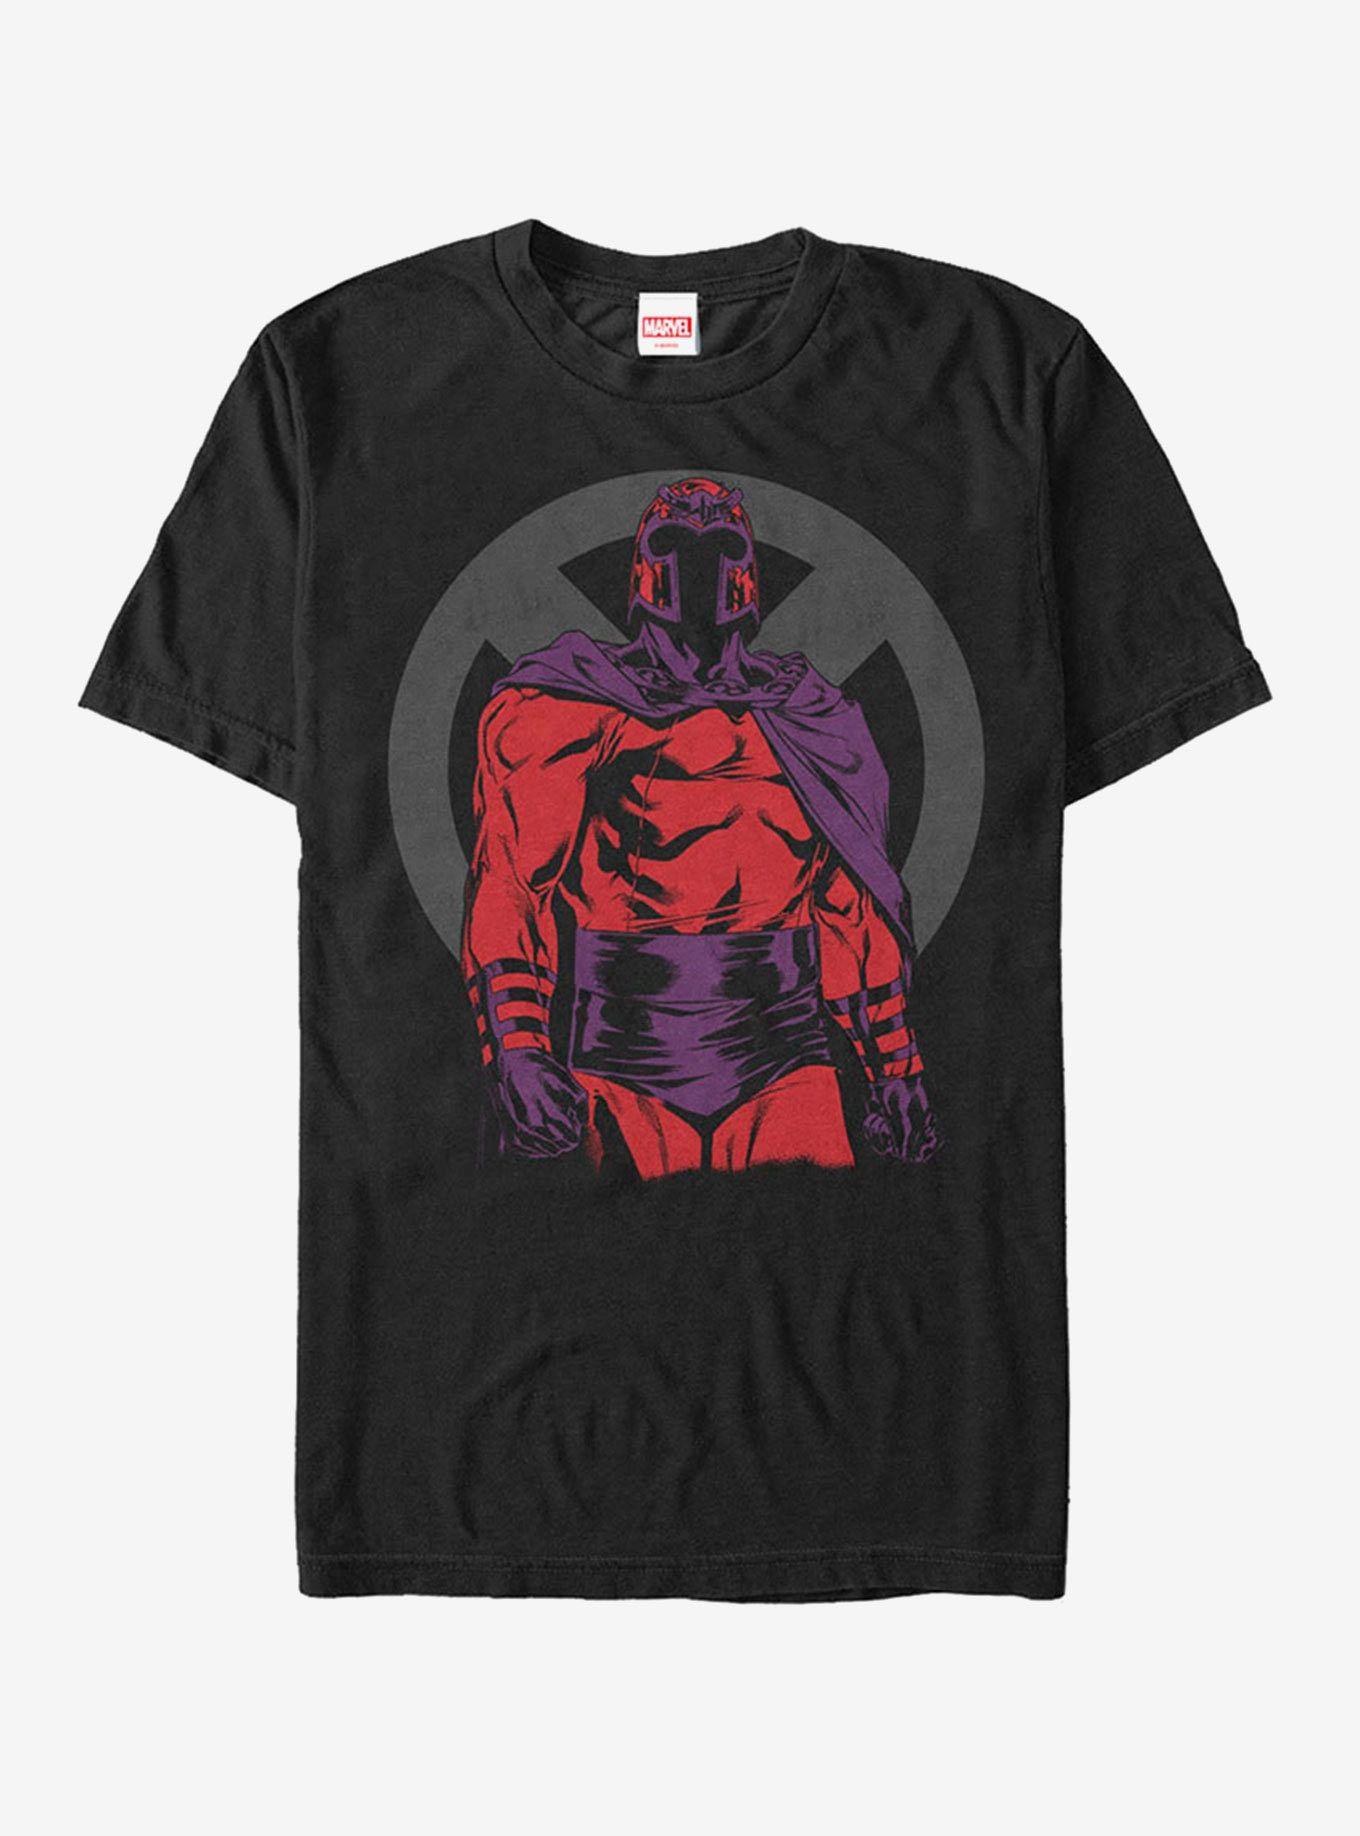 Magneto Logo - Marvel X-Men Magneto Logo T-Shirt